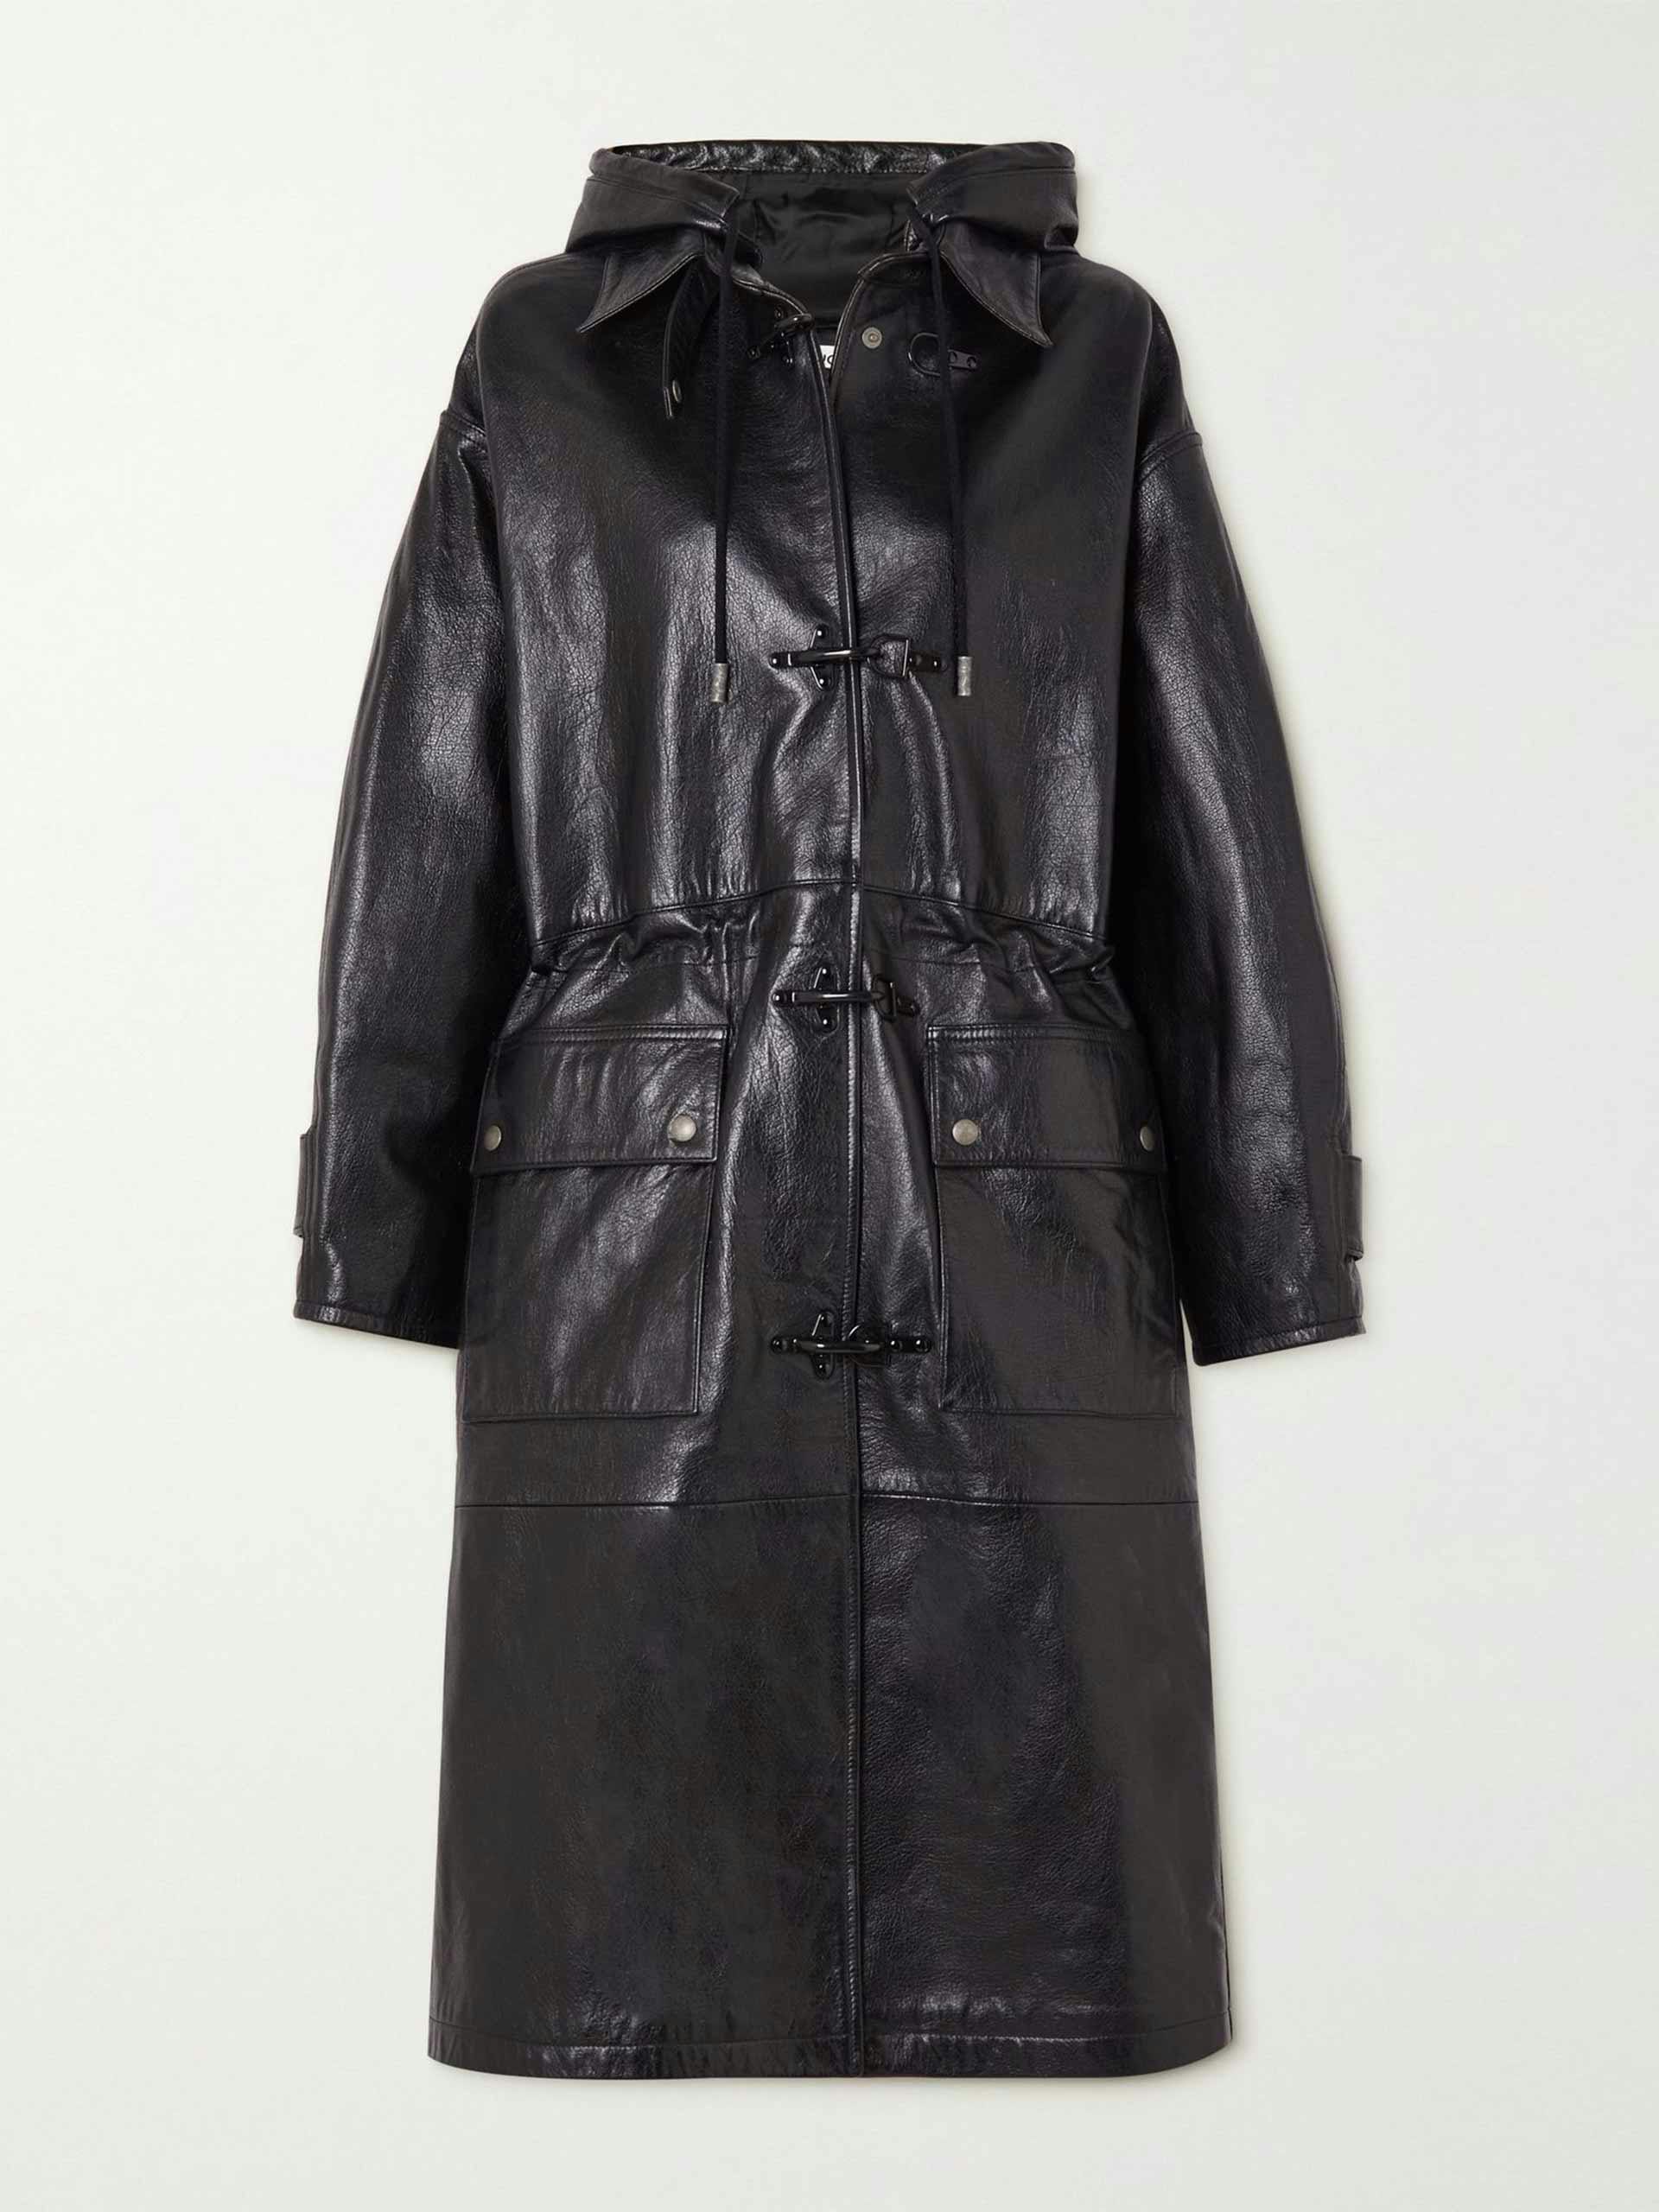 Oversized hooded leather coat